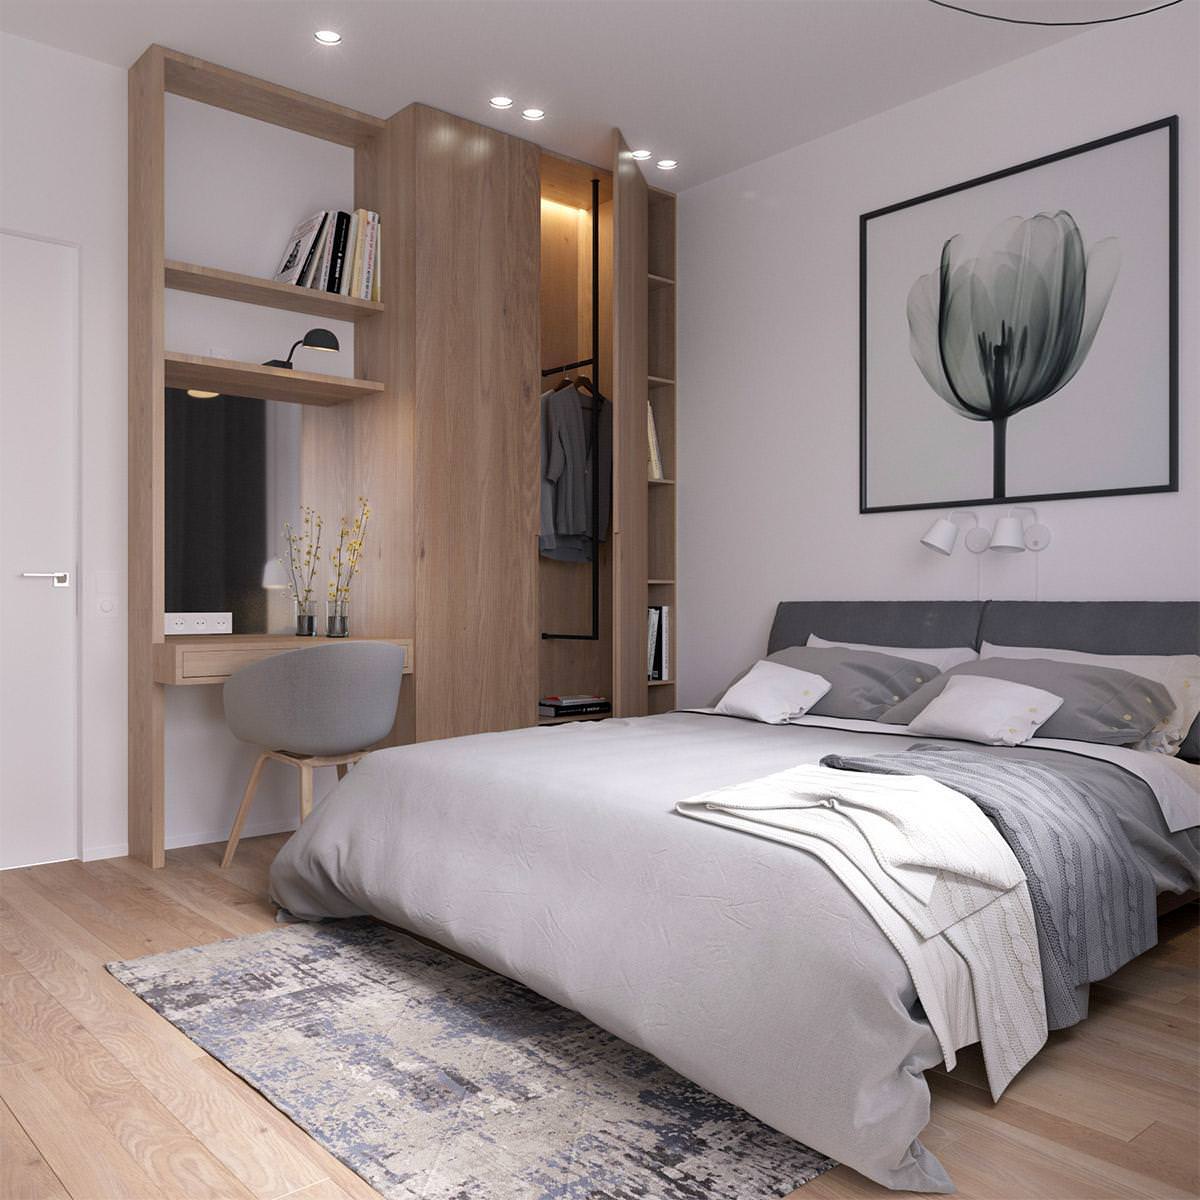 Thiết kế phòng ngủ đơn giản đa năng theo phong cách Bắc Âu